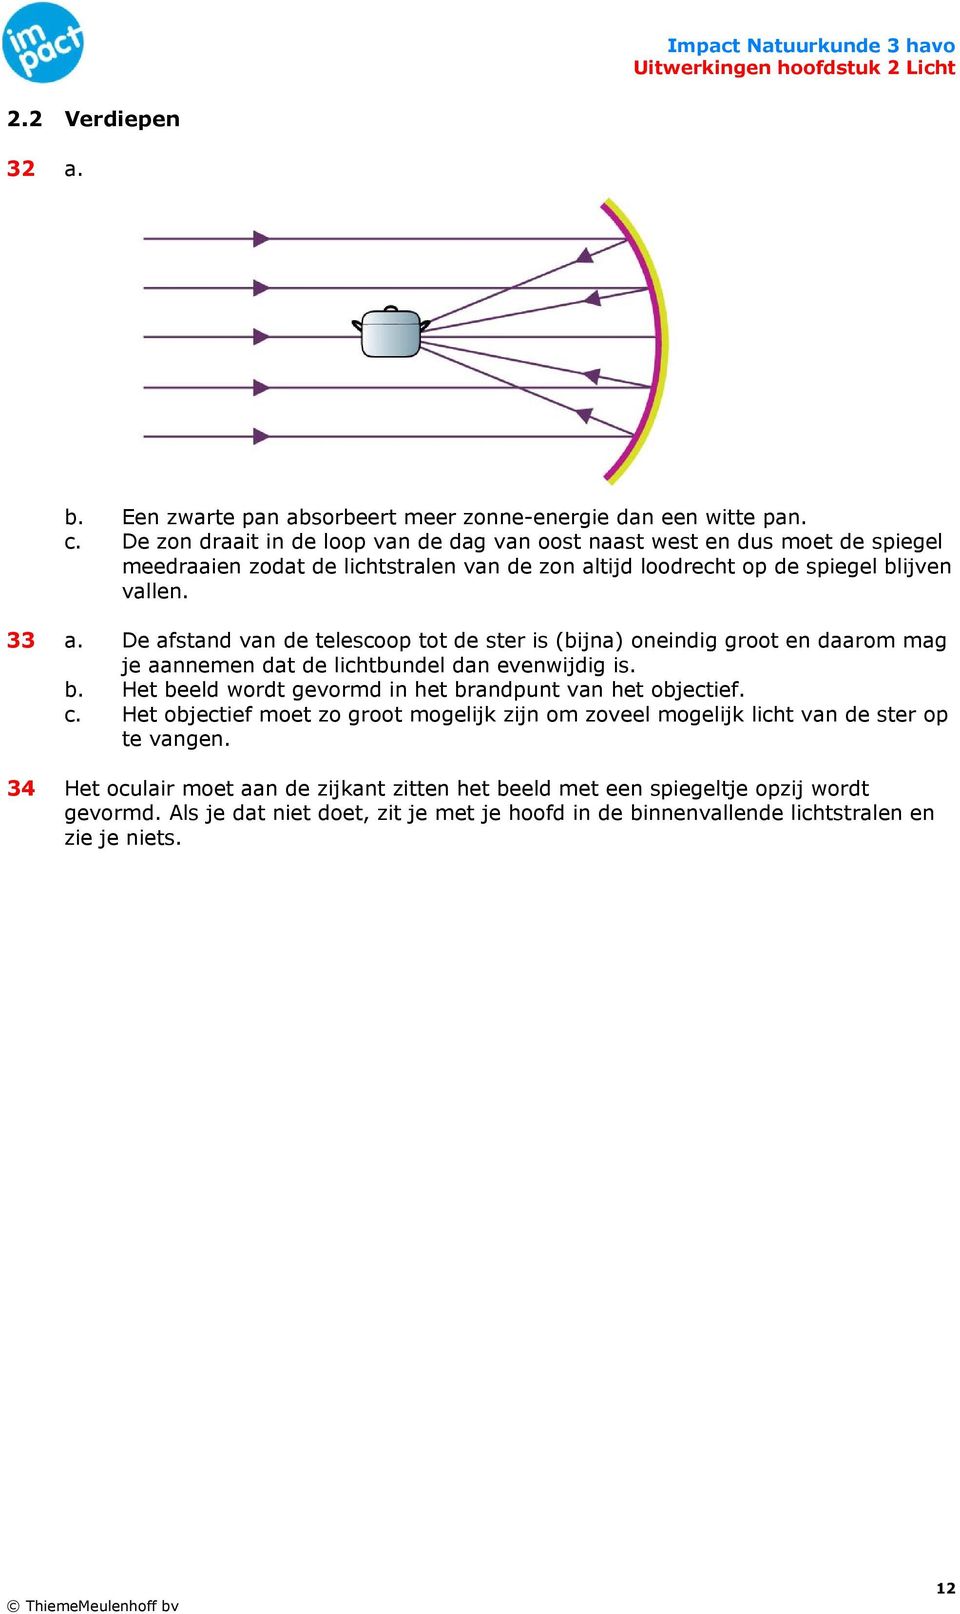 De afstand van de telescoop tot de ster is (bijna) oneindig groot en daarom mag je aannemen dat de lichtbundel dan evenwijdig is. b.